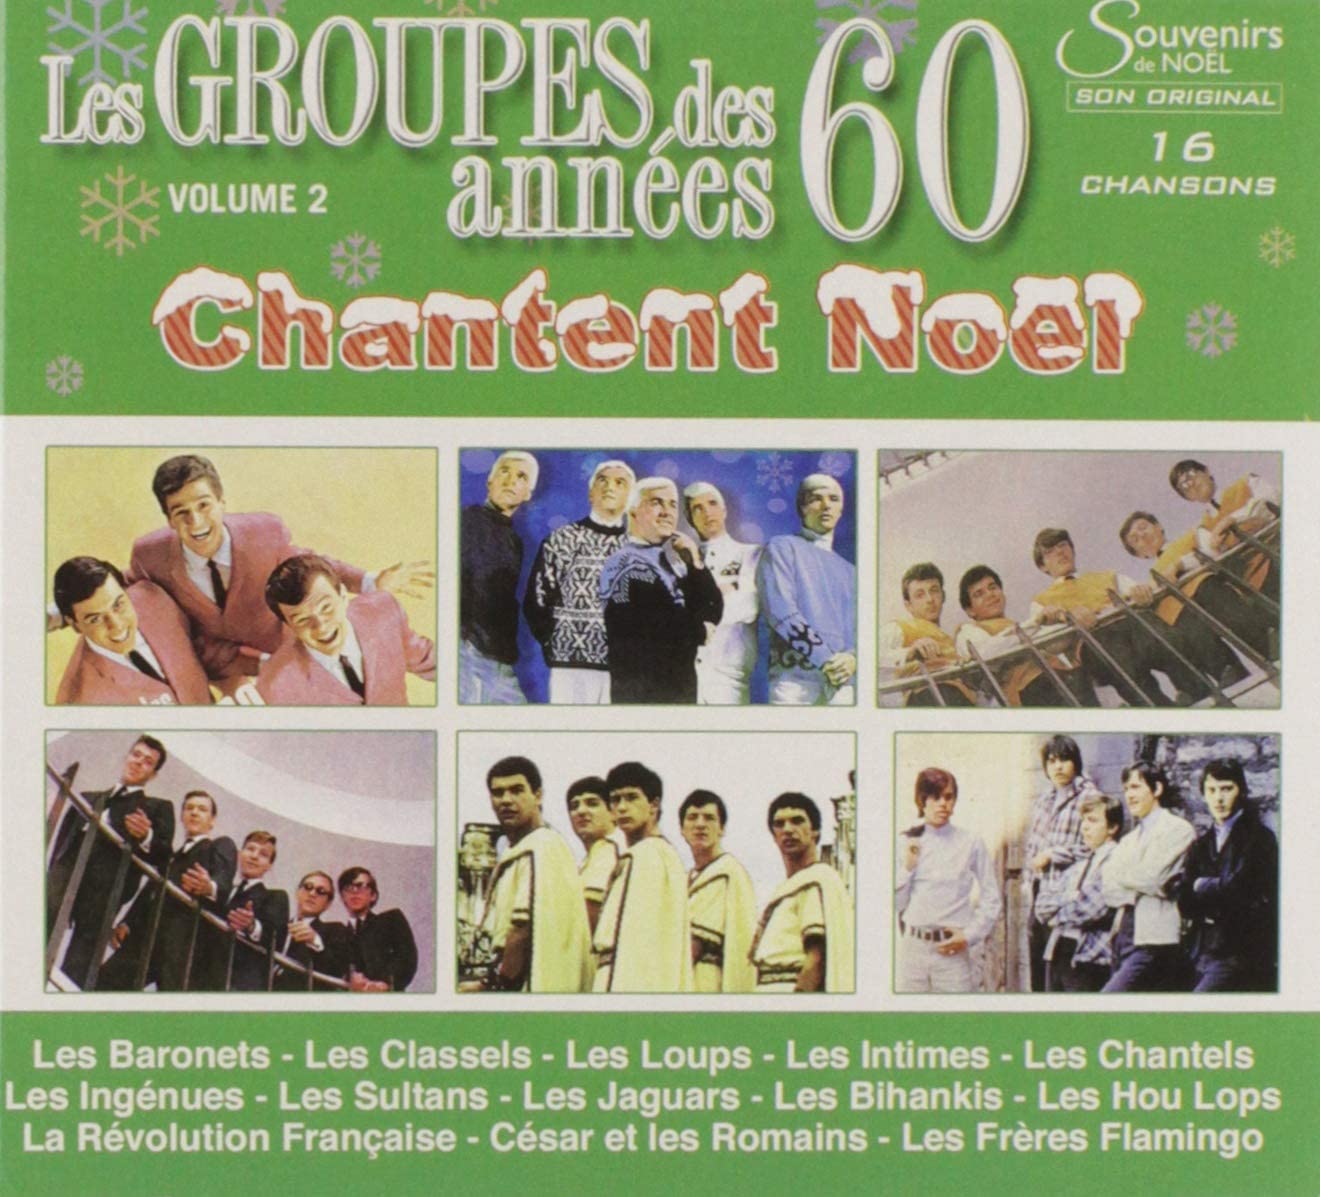 Les Groupes Des Annees 60 Chantent Noel/Vol 2 [Audio CD] Les Groupes Des Annees 60 Chantent Noel